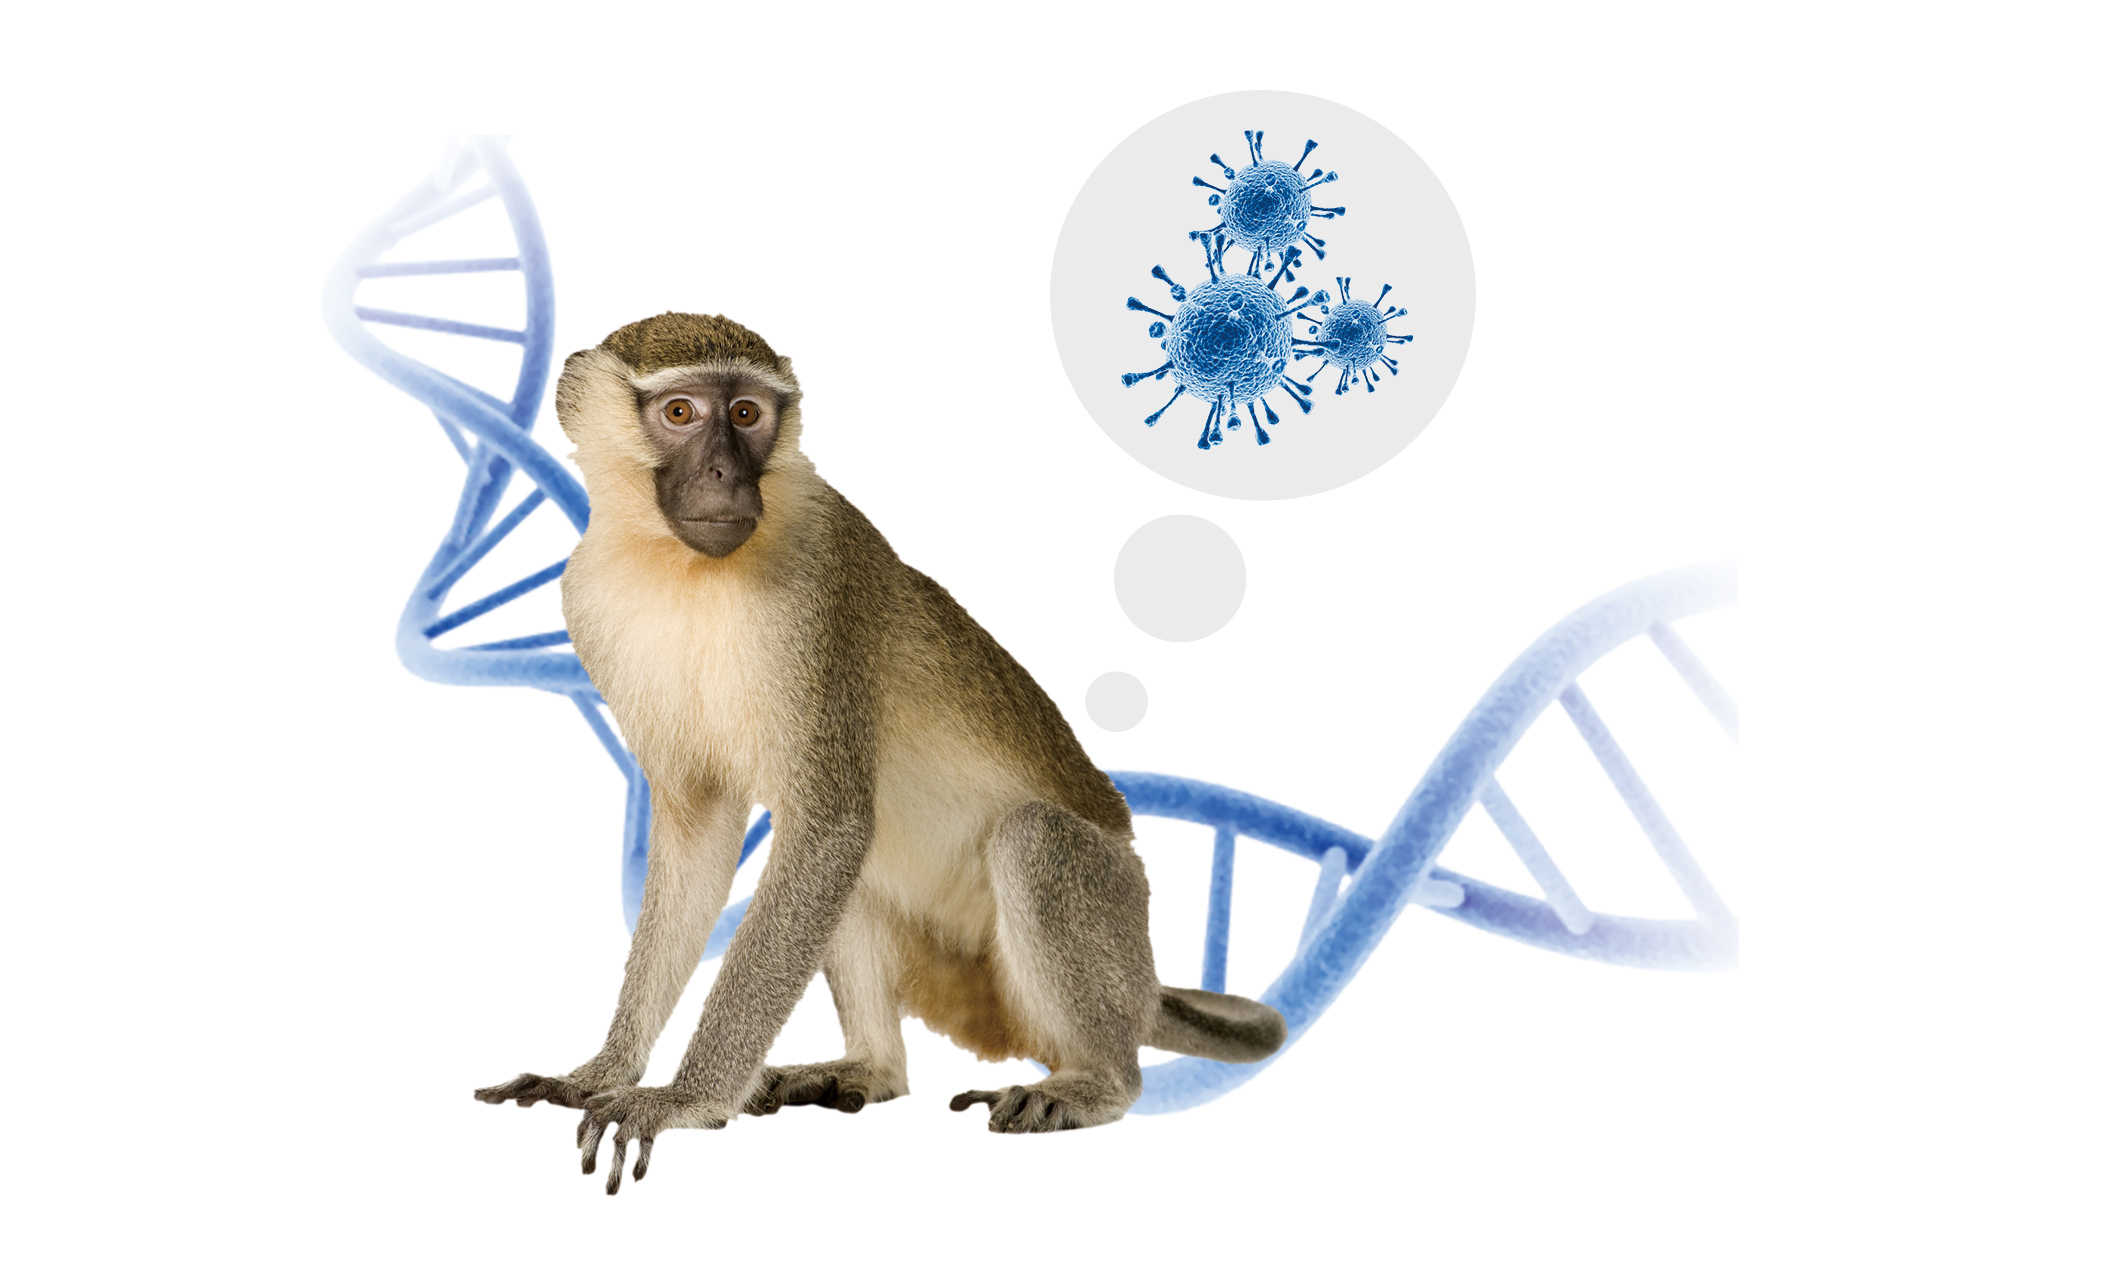 Surto de varíola dos macacos: o que devemos saber?